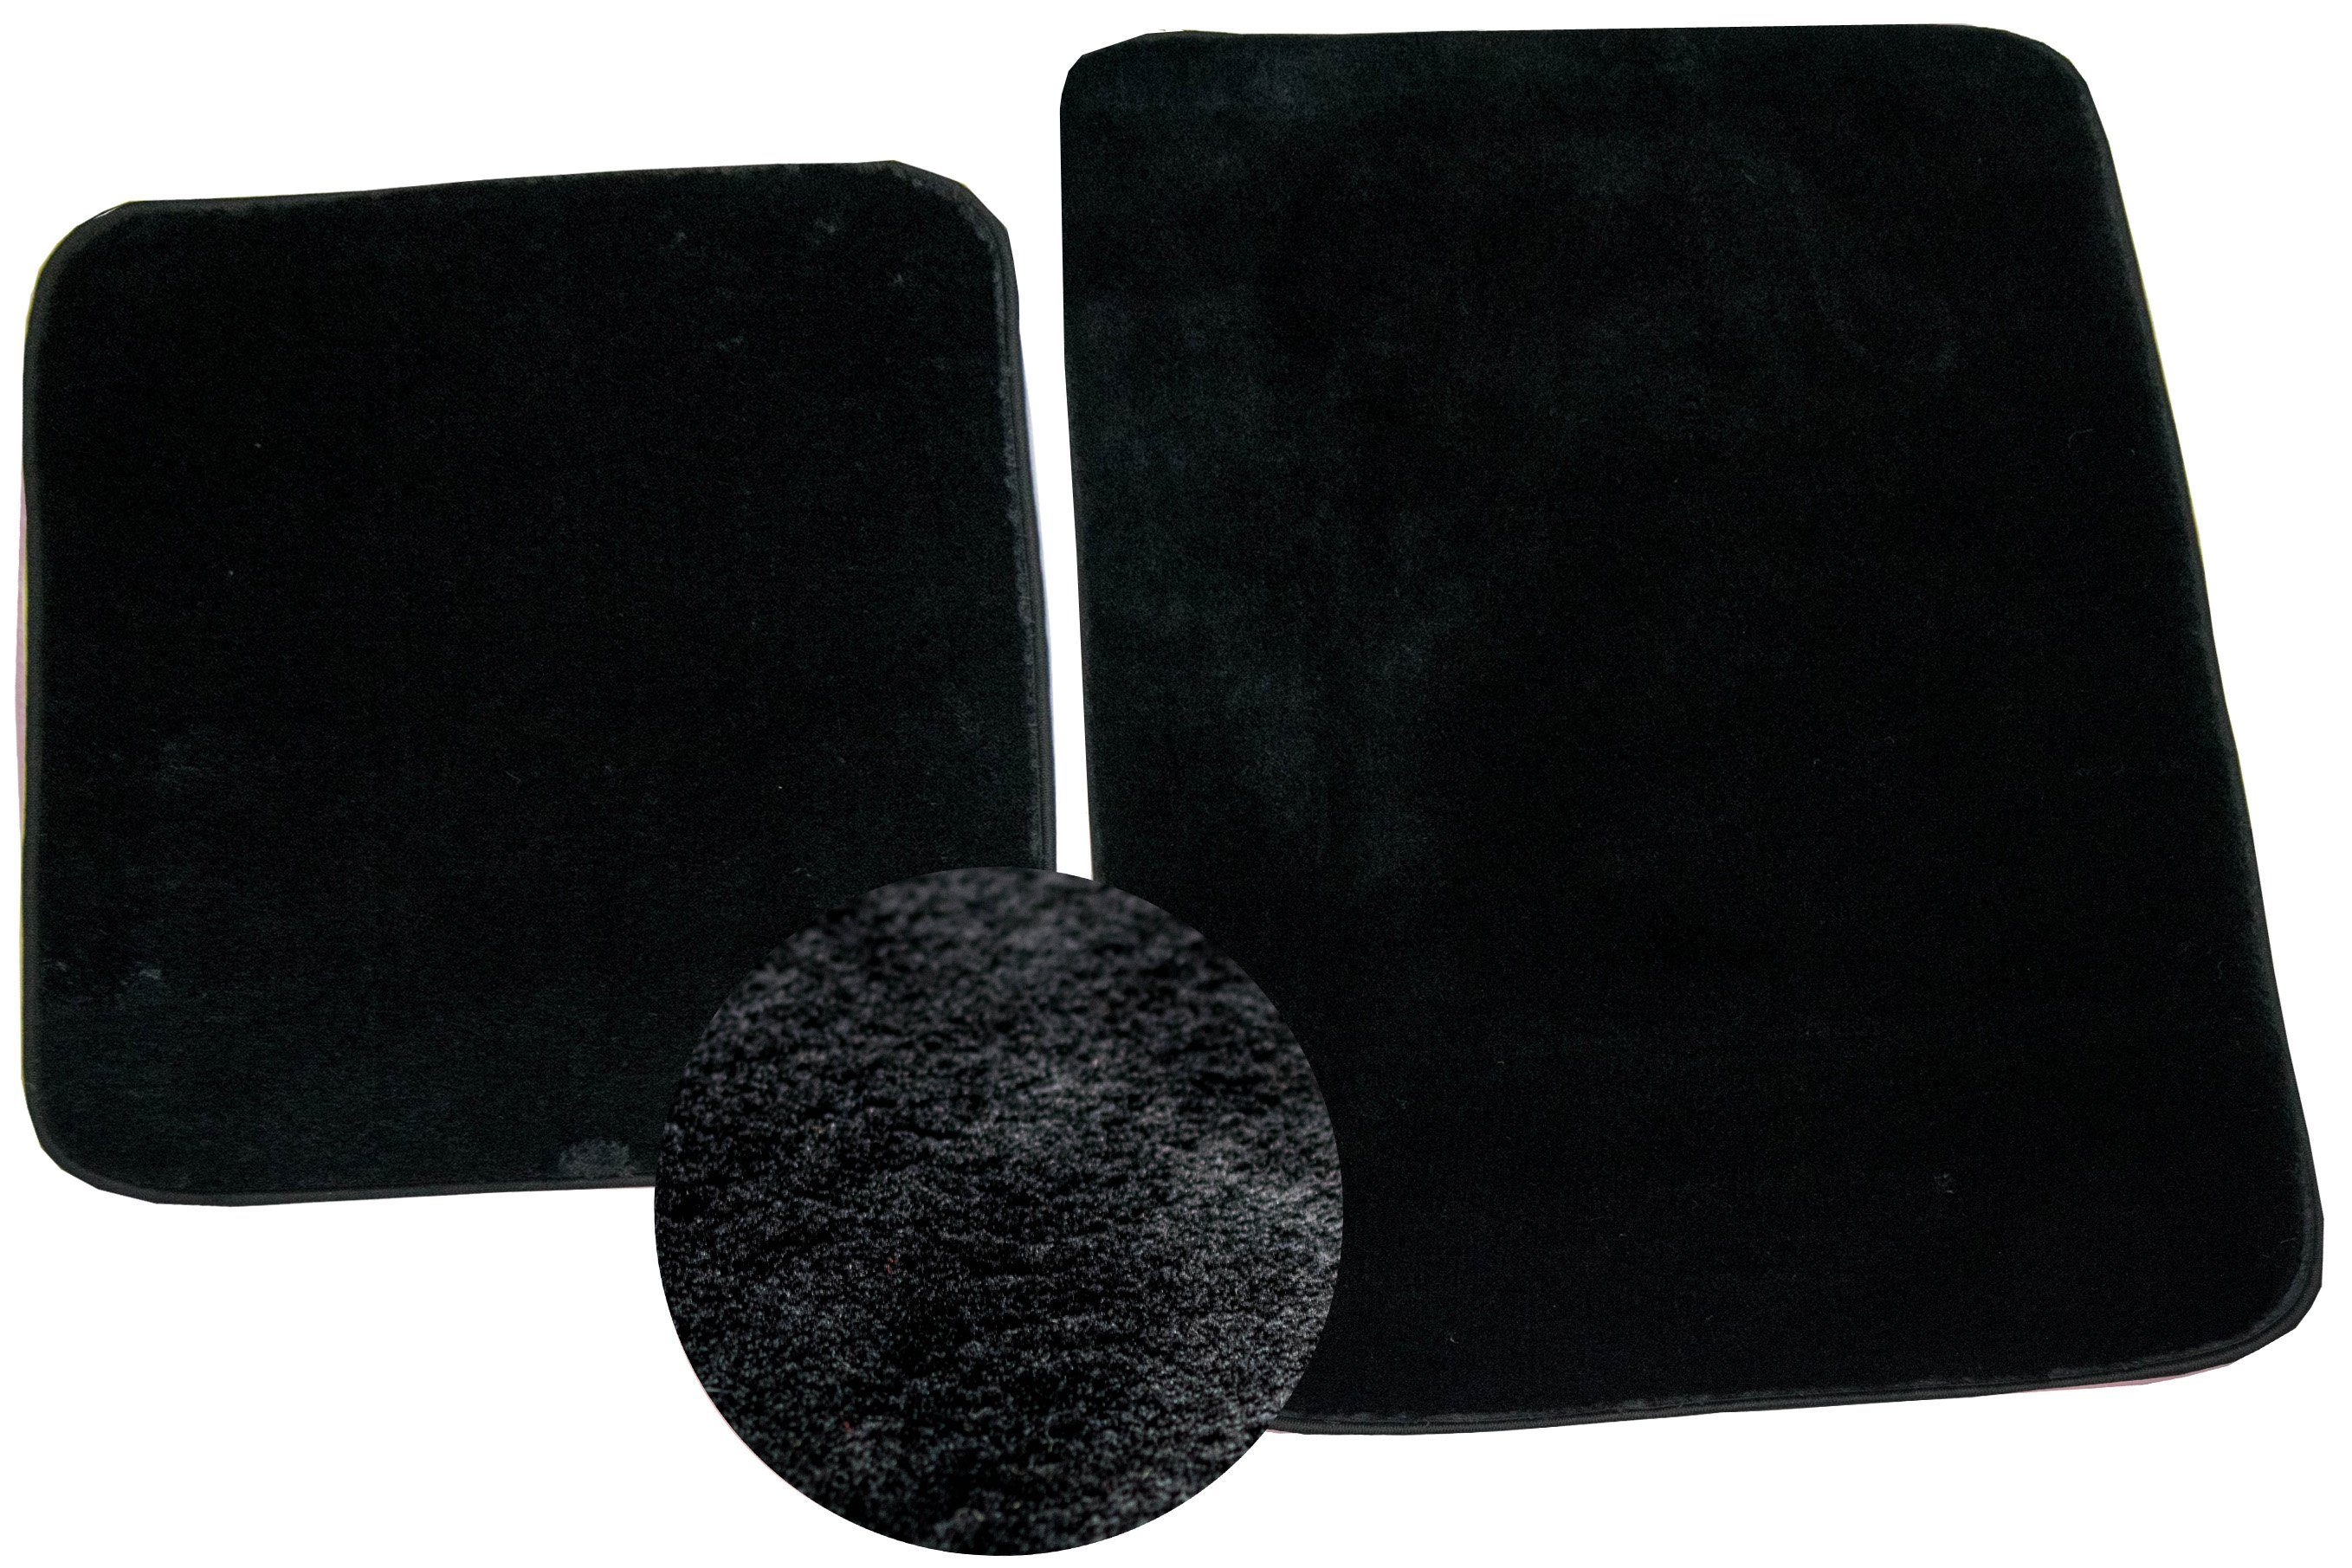 Teppich Badteppich WC Teppich Badematten Set 2 teilig waschbar rutschfest in schwarz, Carpetia, rechteckig, Höhe: 18 mm